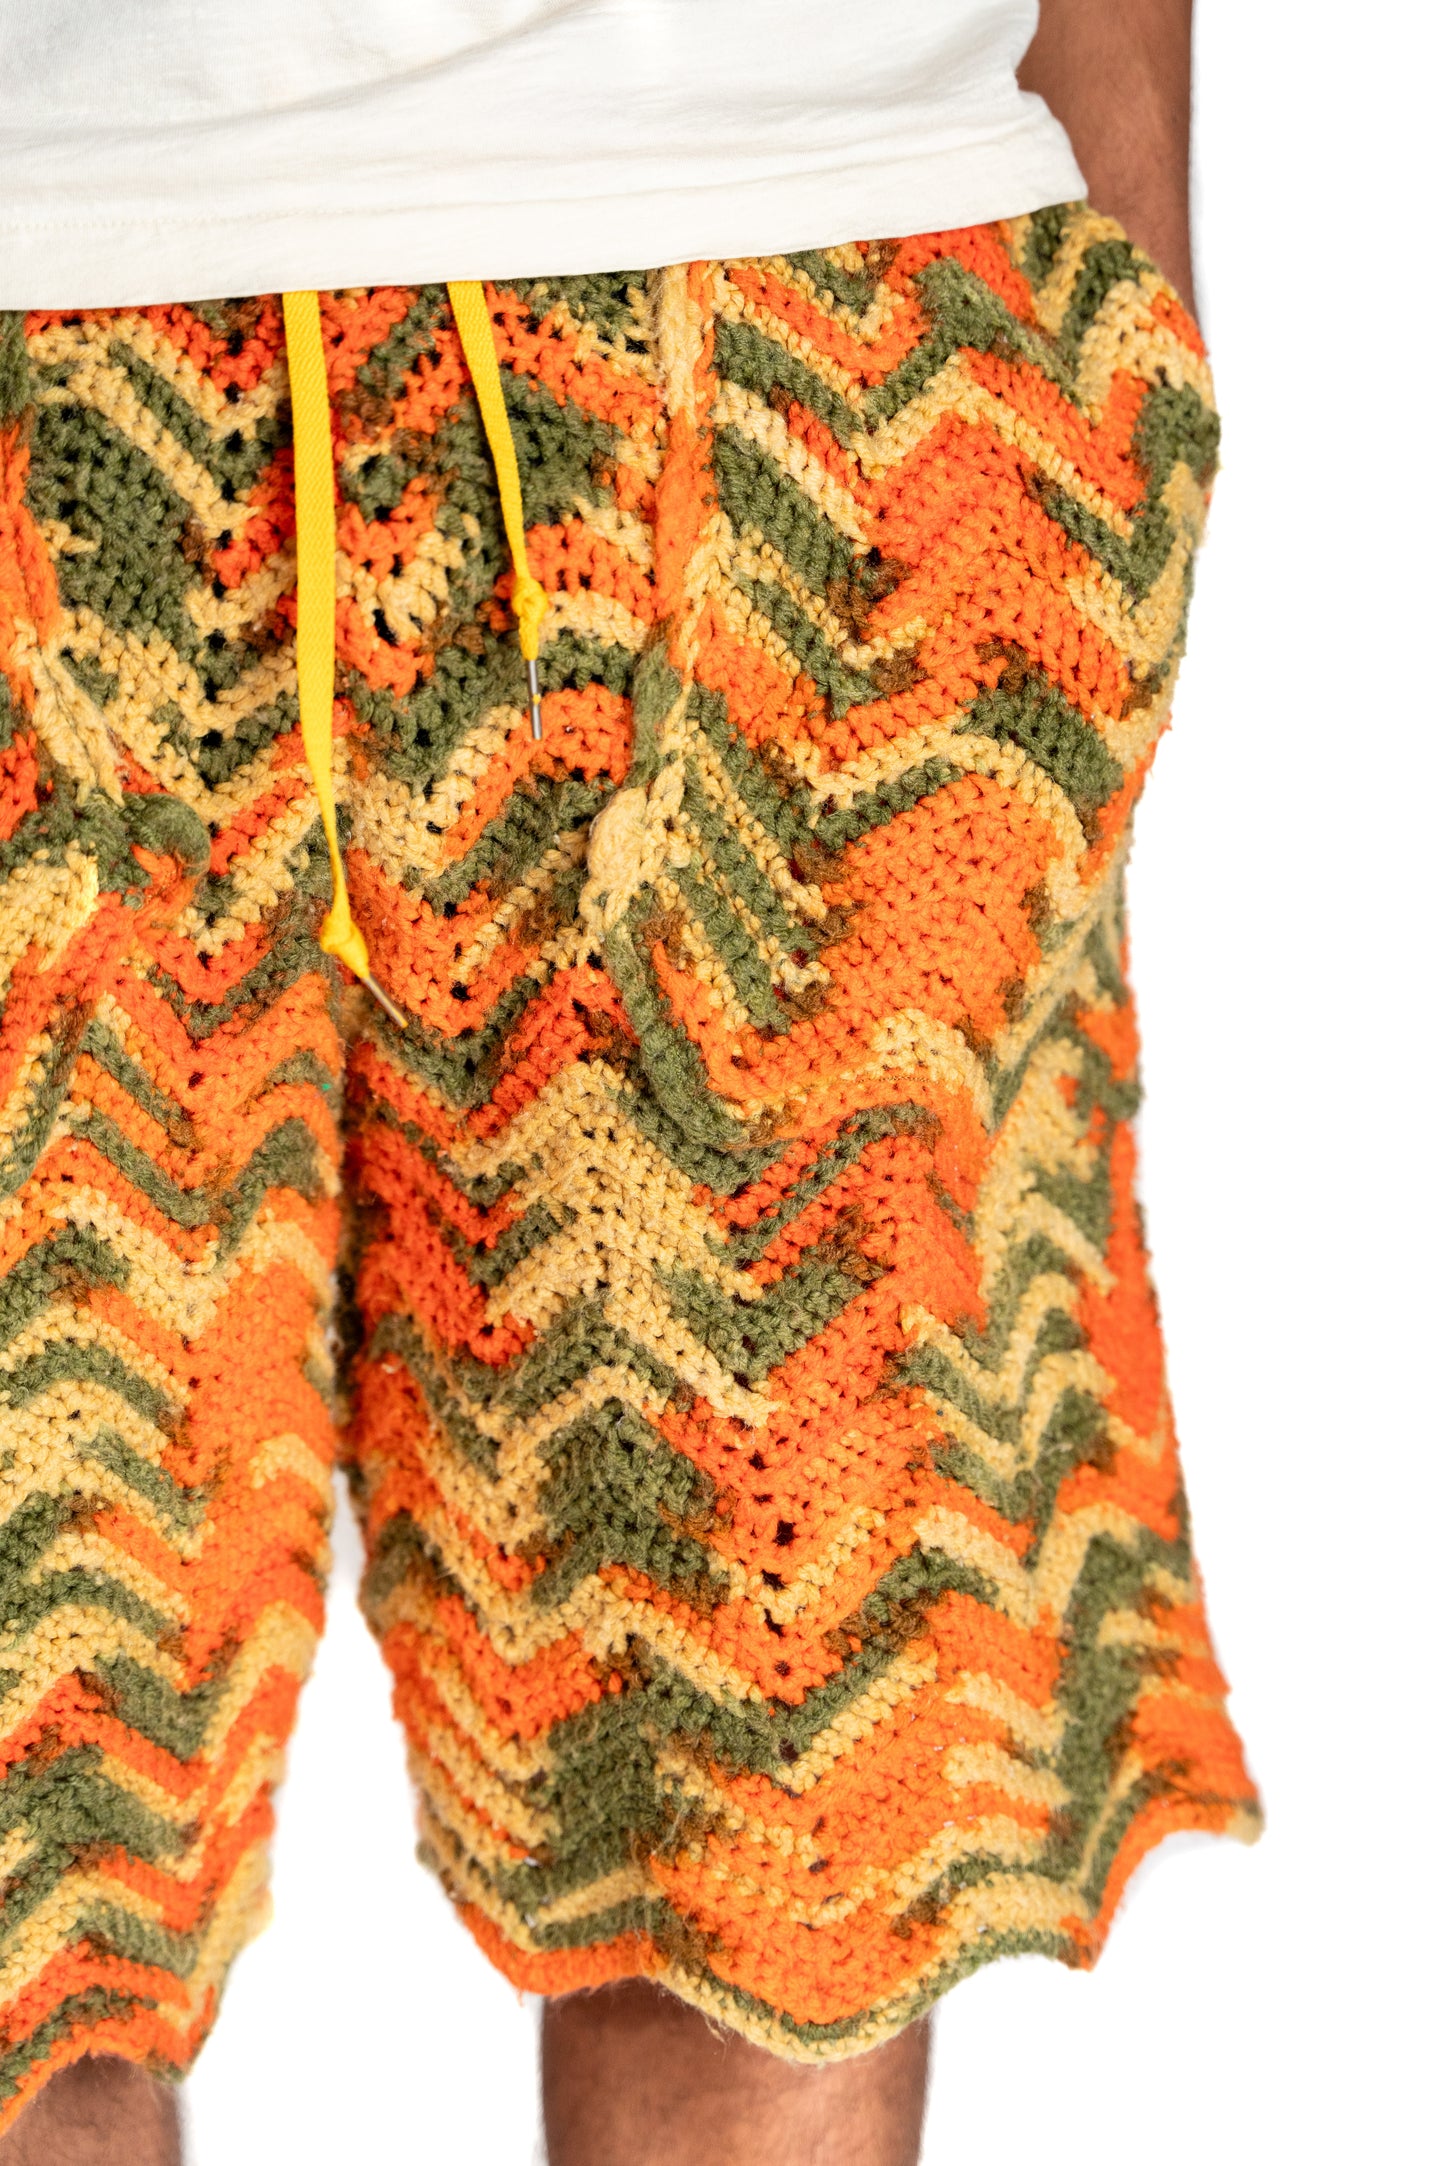 Afgan Knitted Shorts (tahoe)